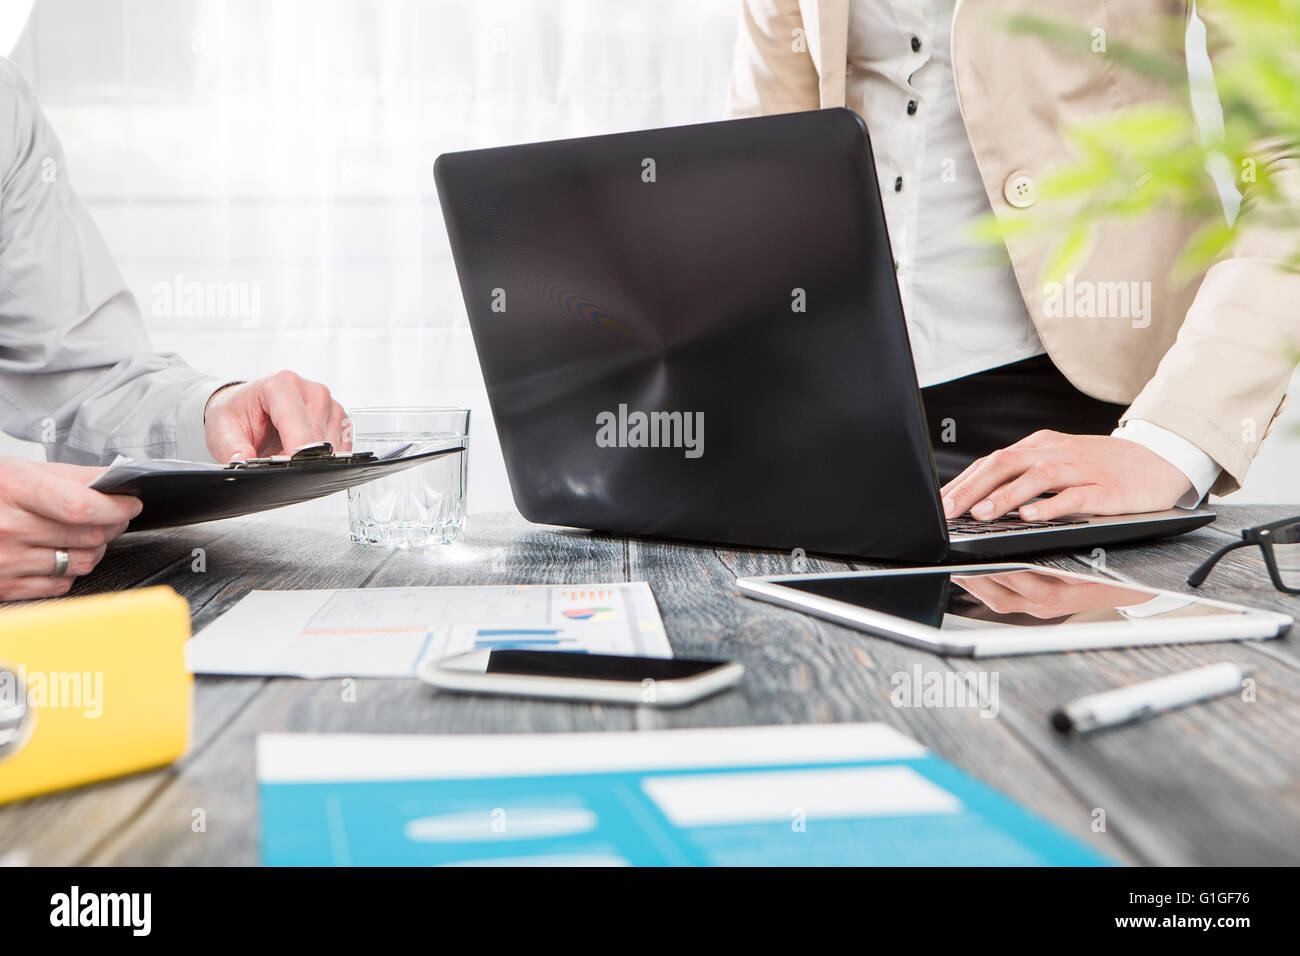 Planung Business Karriere arbeitsreichen Laptop Arbeitsplatz - stock Bild Stockfoto